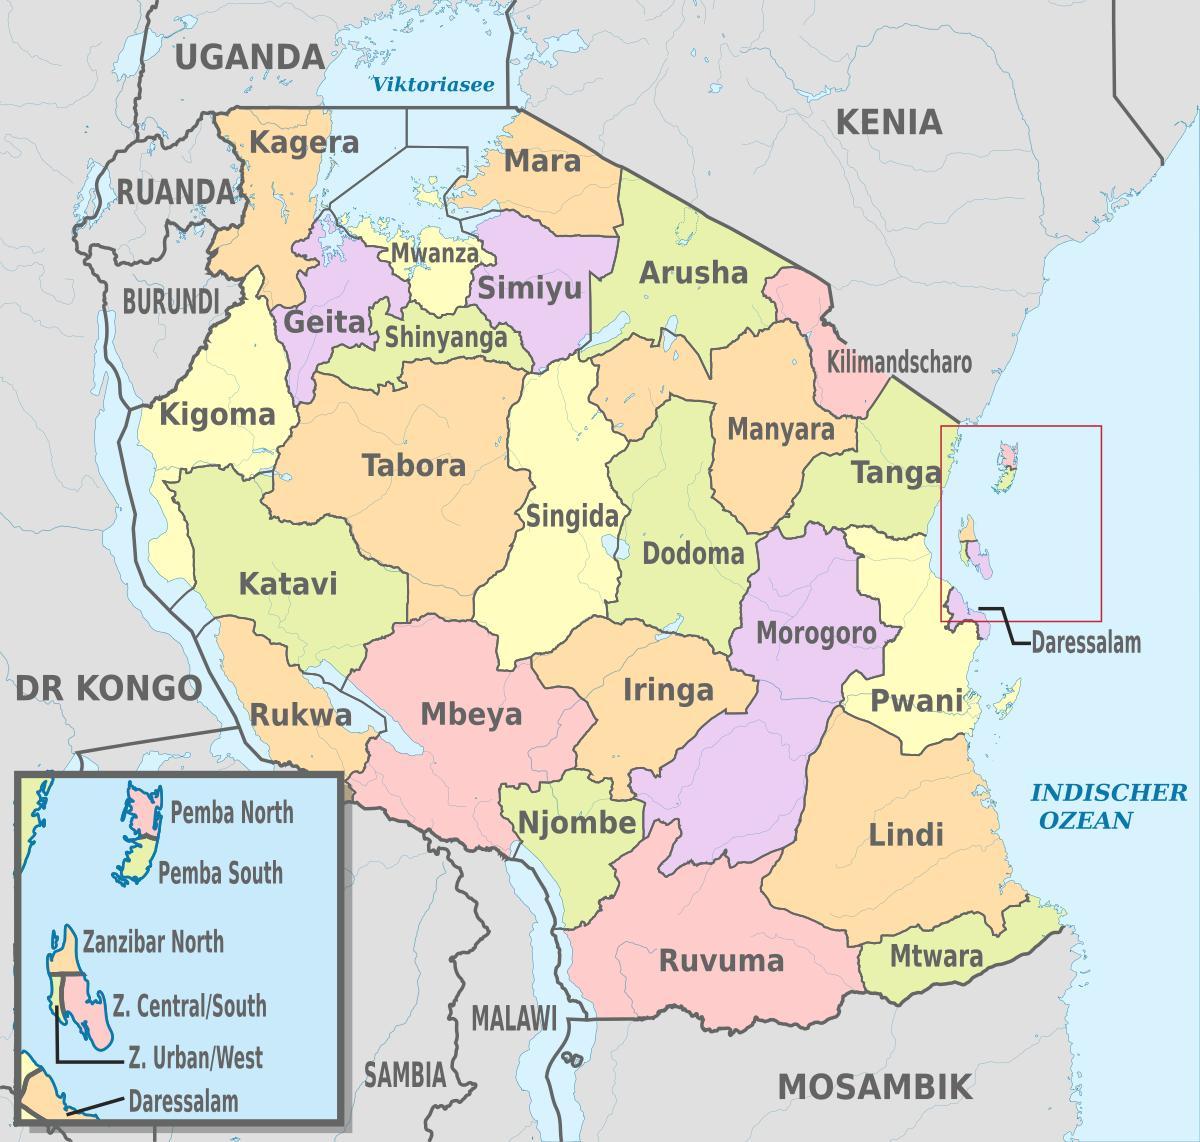 χάρτης της τανζανίας δείχνει περιφέρειες και περιοχές